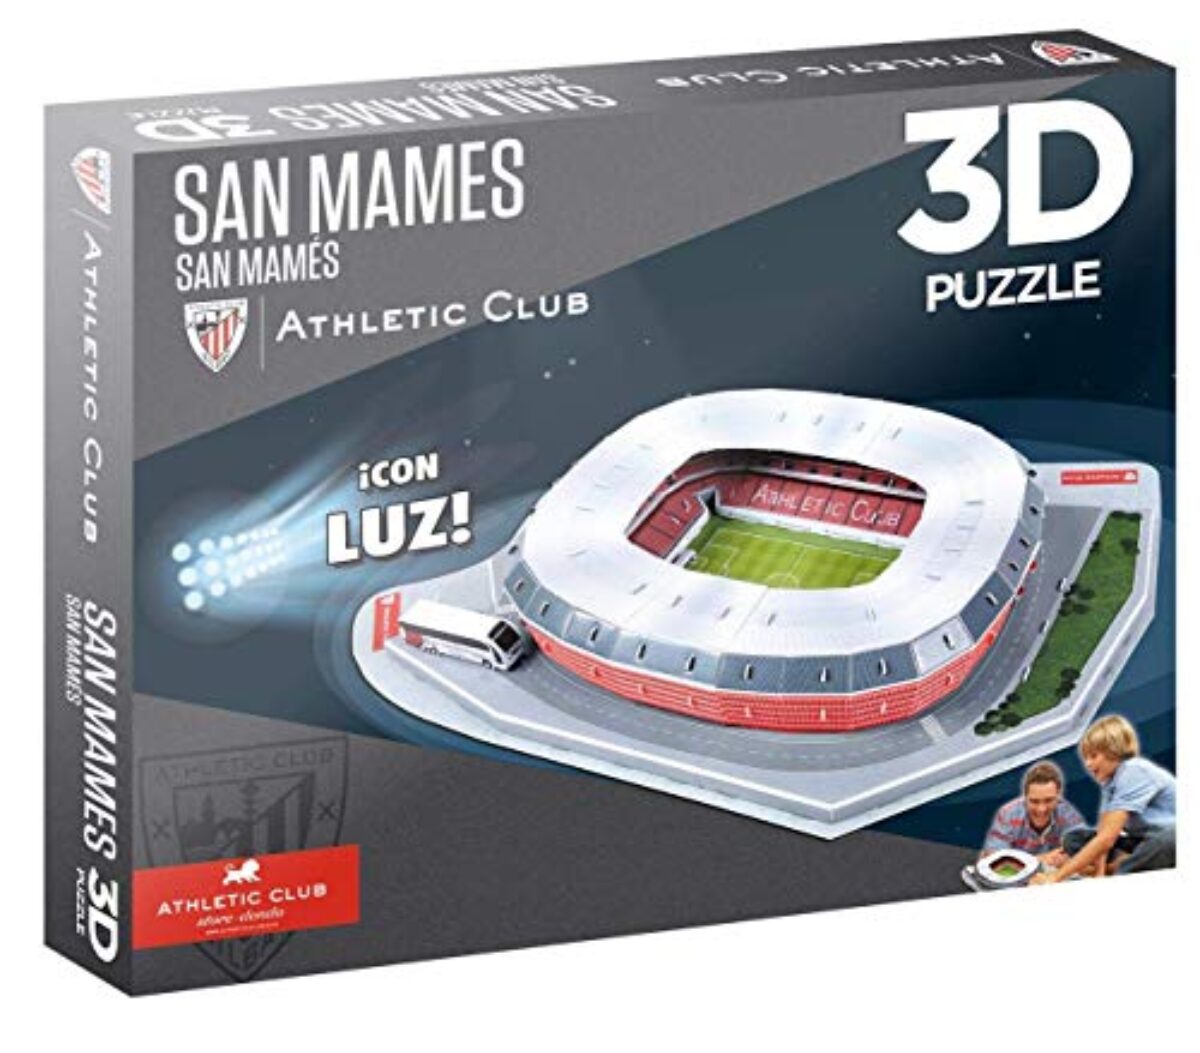 Stadio di Wembley Inghilterra Calcio 3D puzzle giocattolo gioco calcio 